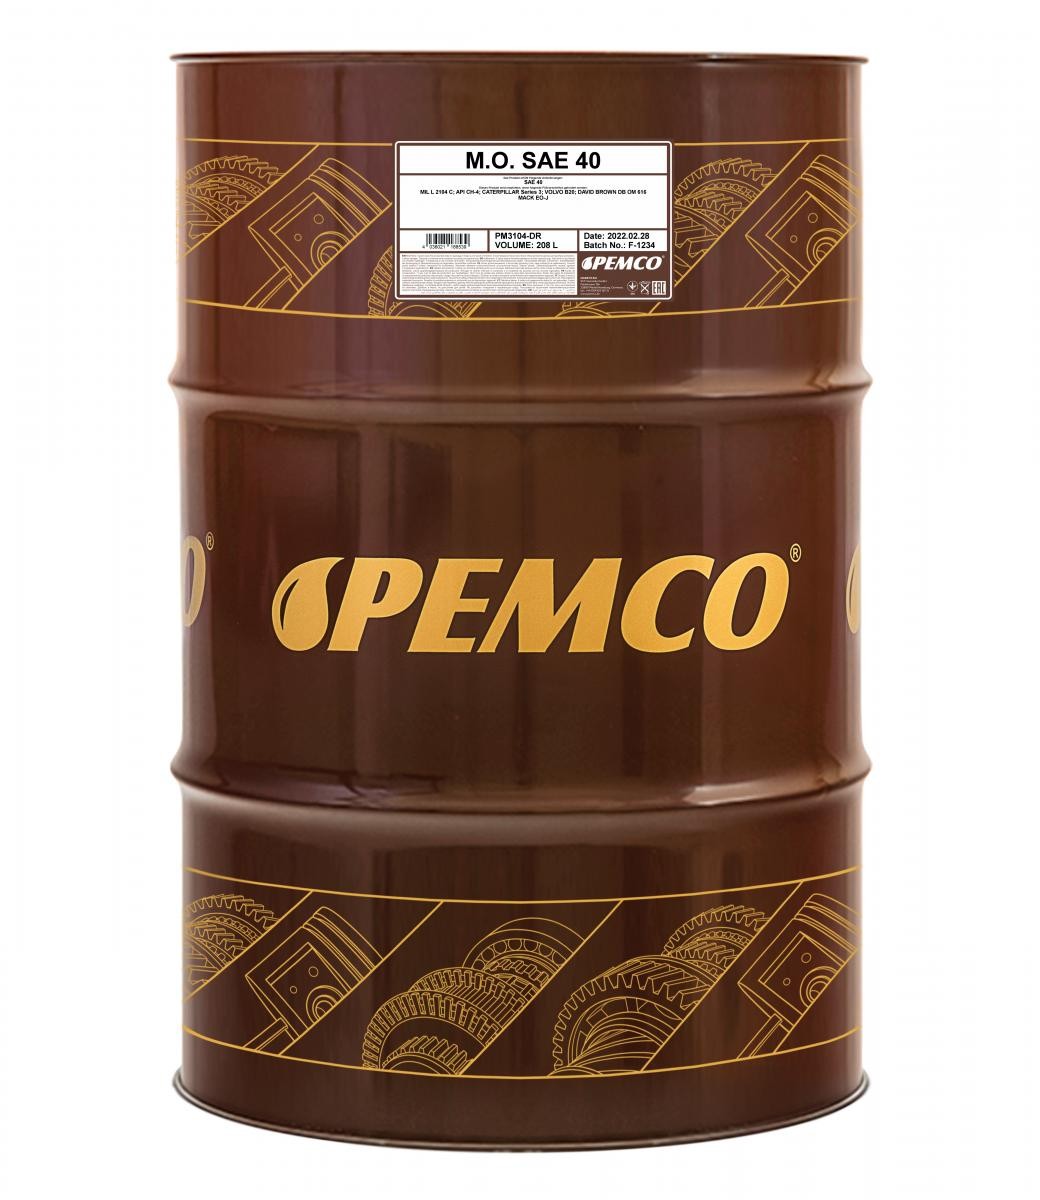 PEMCO M.O. SAE 40 SAE 40, 208l Motor oil PM3104-DR buy